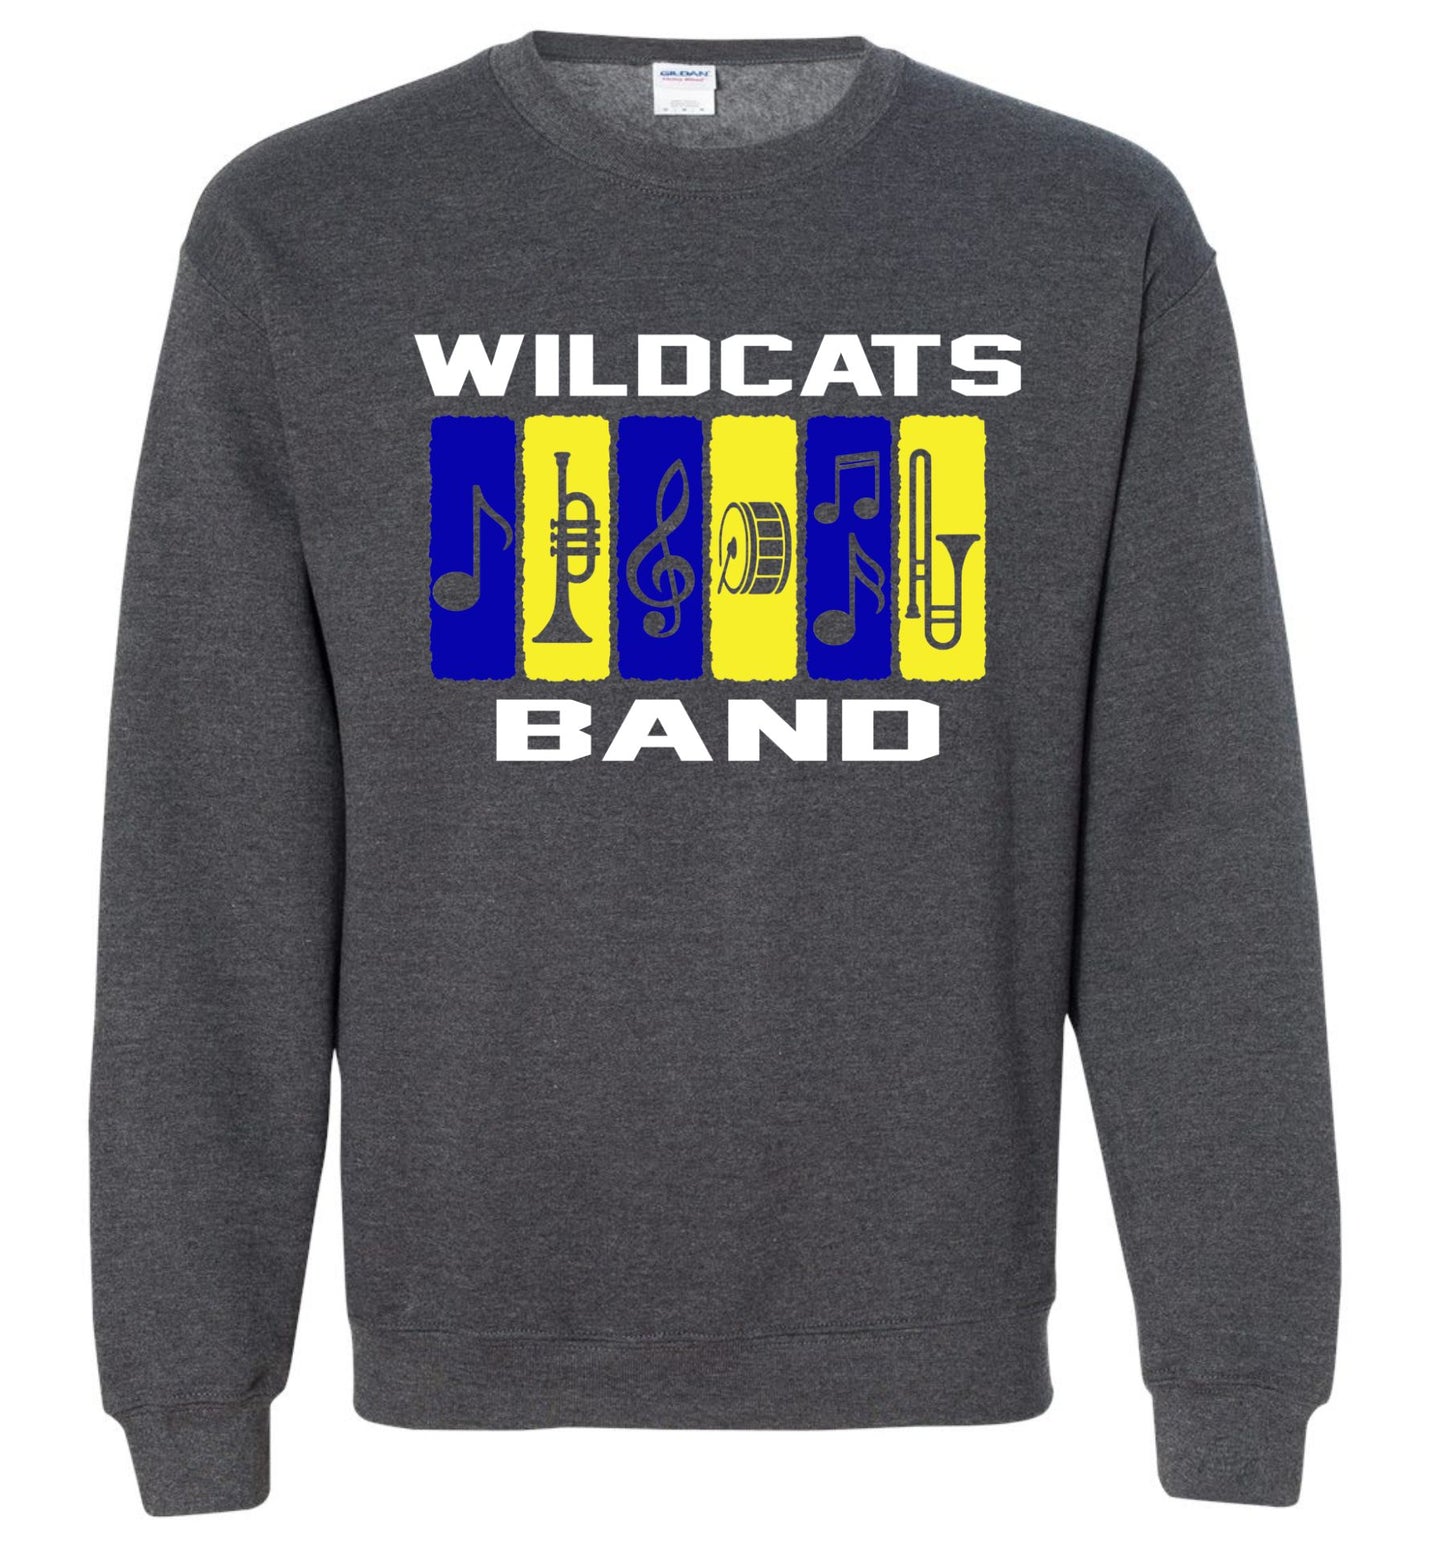 Galva Wildcats - Band Crew Sweatshirt